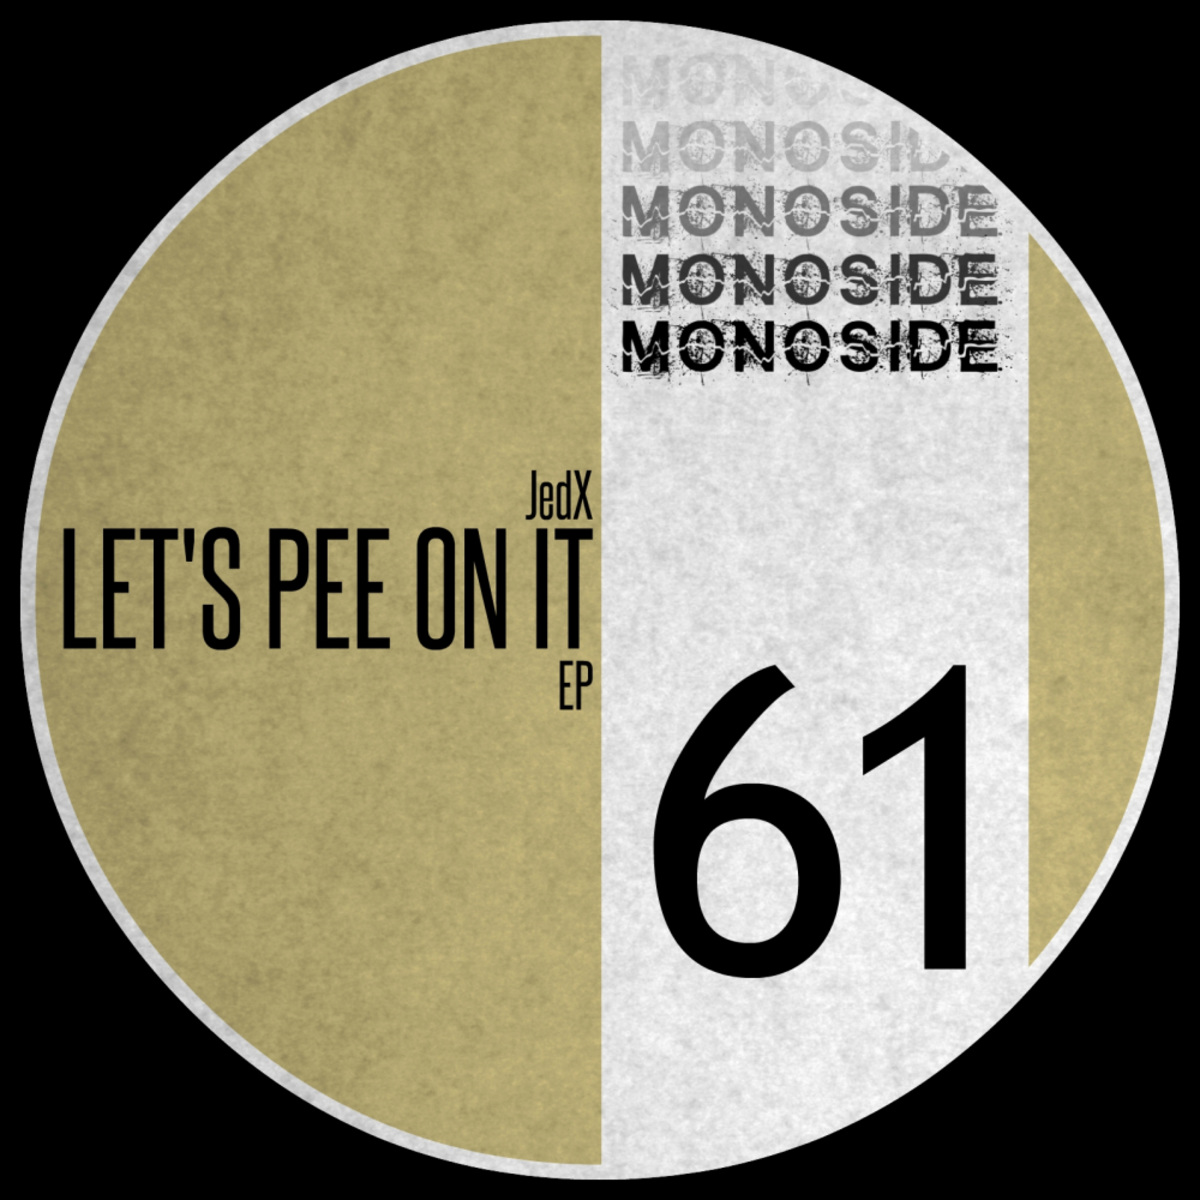 JedX - Let's Pee On It EP / MONOSIDE